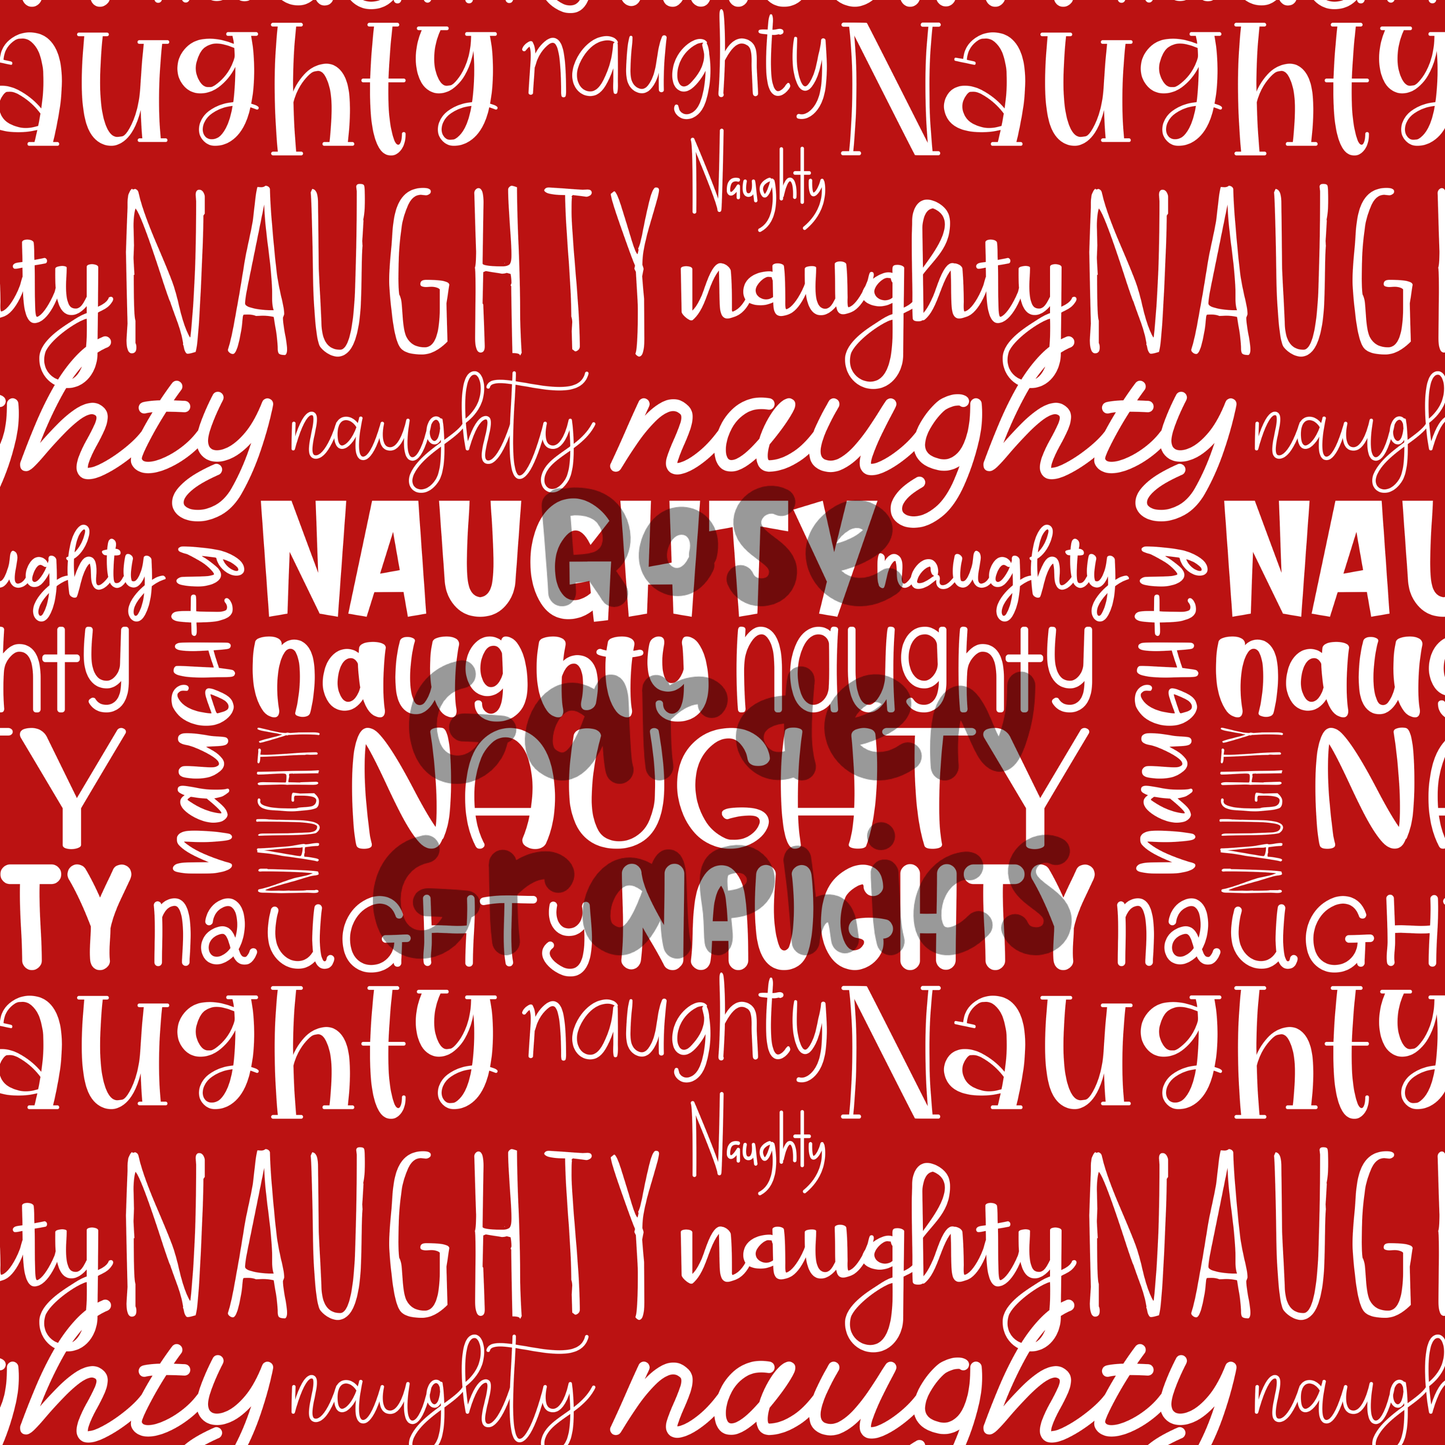 Paquete de 4 imágenes perfectas de Naughty and Nice Words